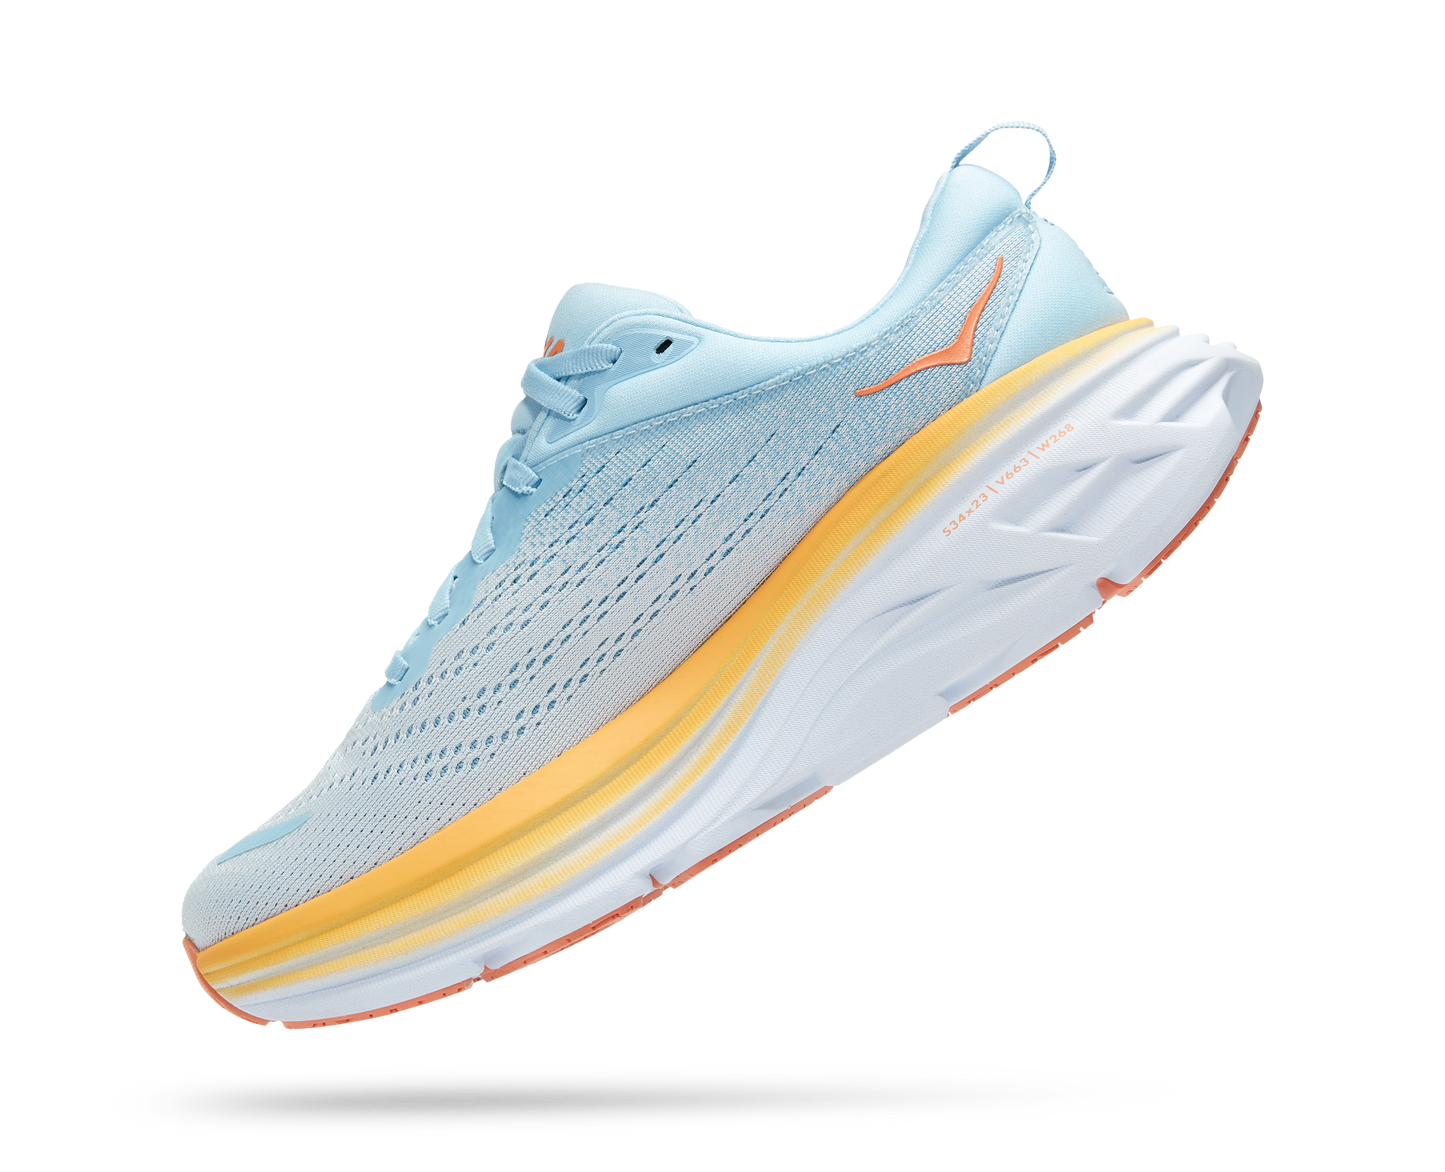 Hoka running shoe with light blue/grey fabrics and orange and white sole.